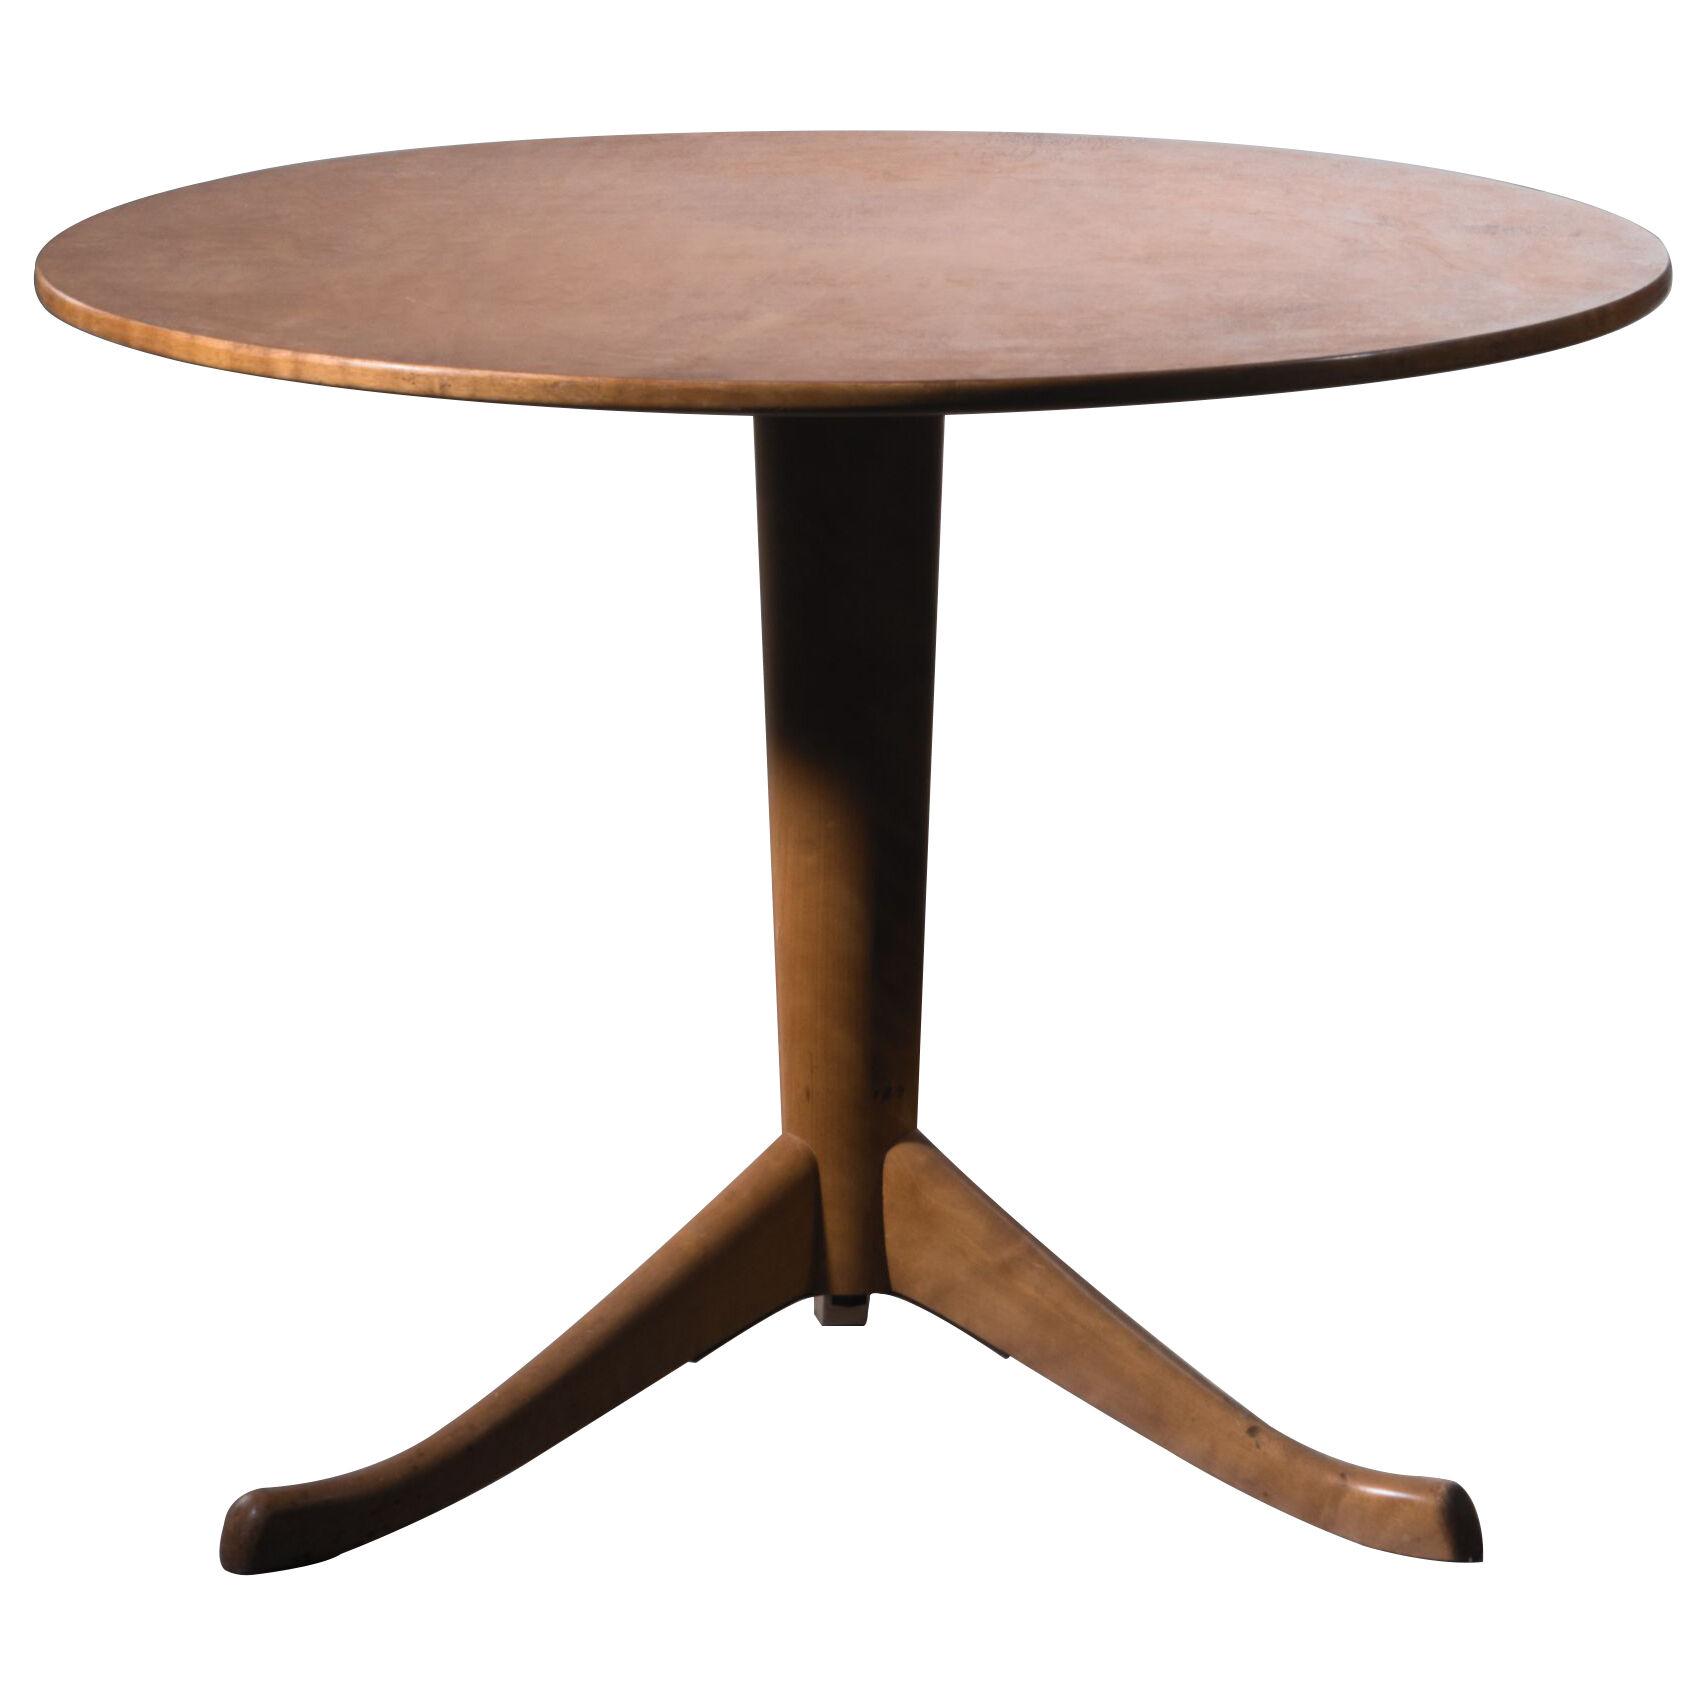 Axel Larsson Round Gueridon Table, Svenska Möbelfabriken, Bodafors, 1930s